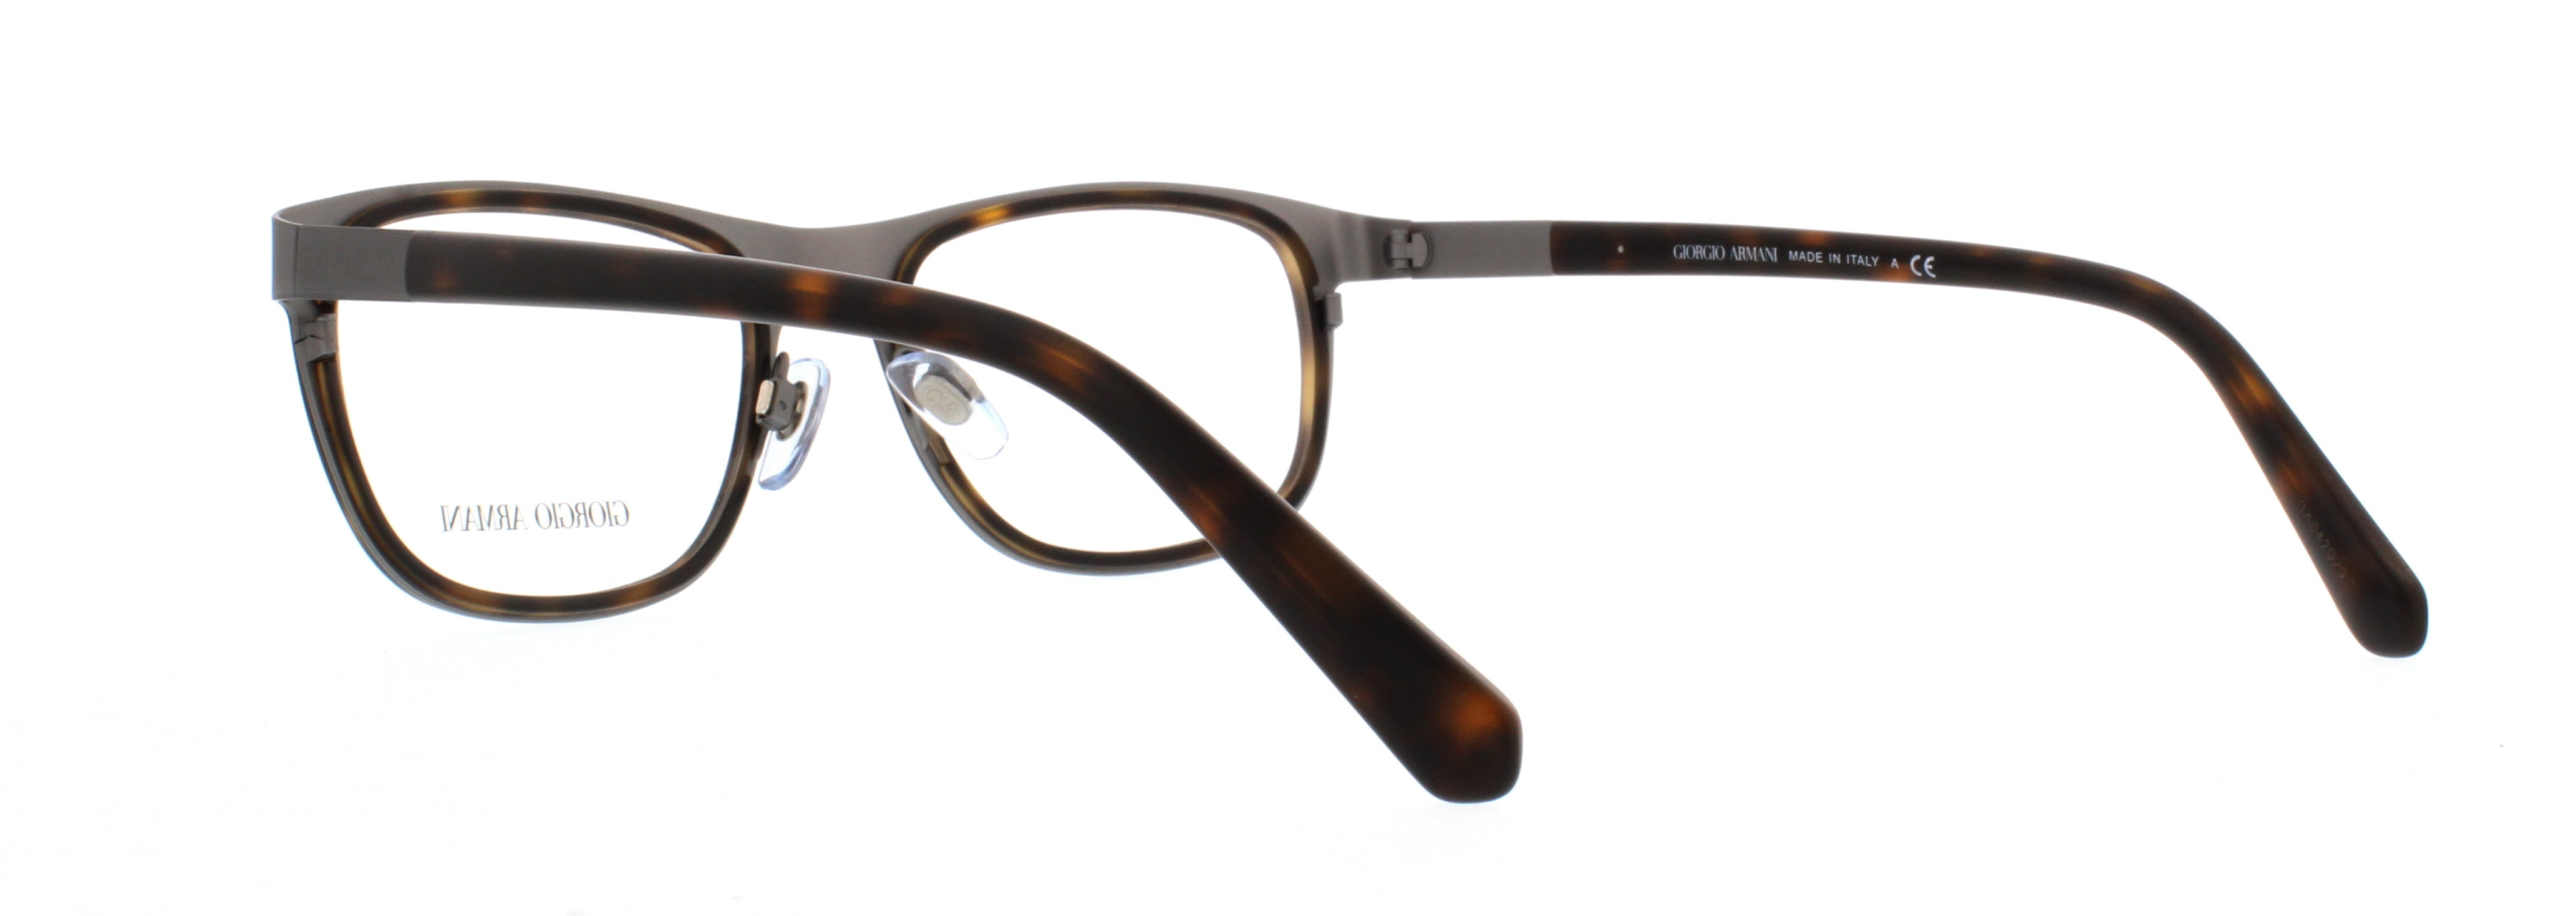 Designer Frames Outlet. Giorgio Armani Eyeglasses AR5012